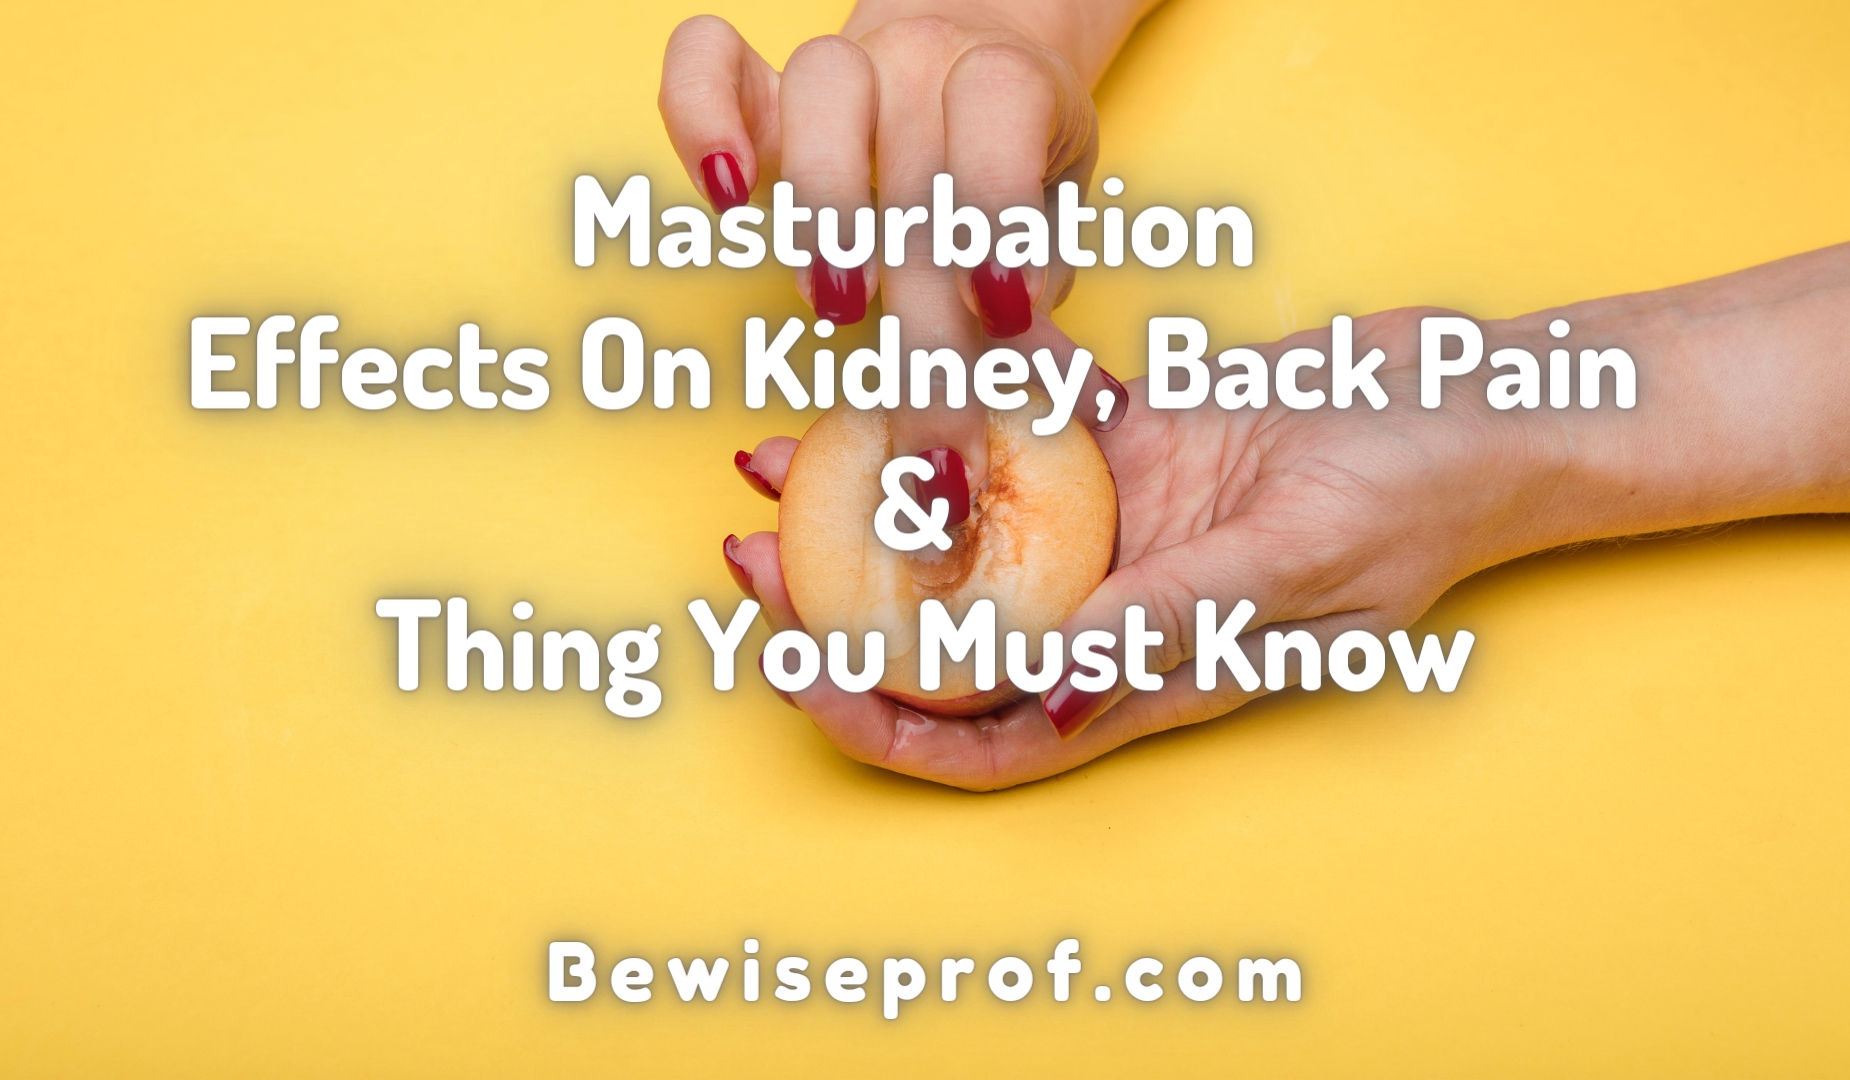 Masturbation Effects On Kidney, Back Pain